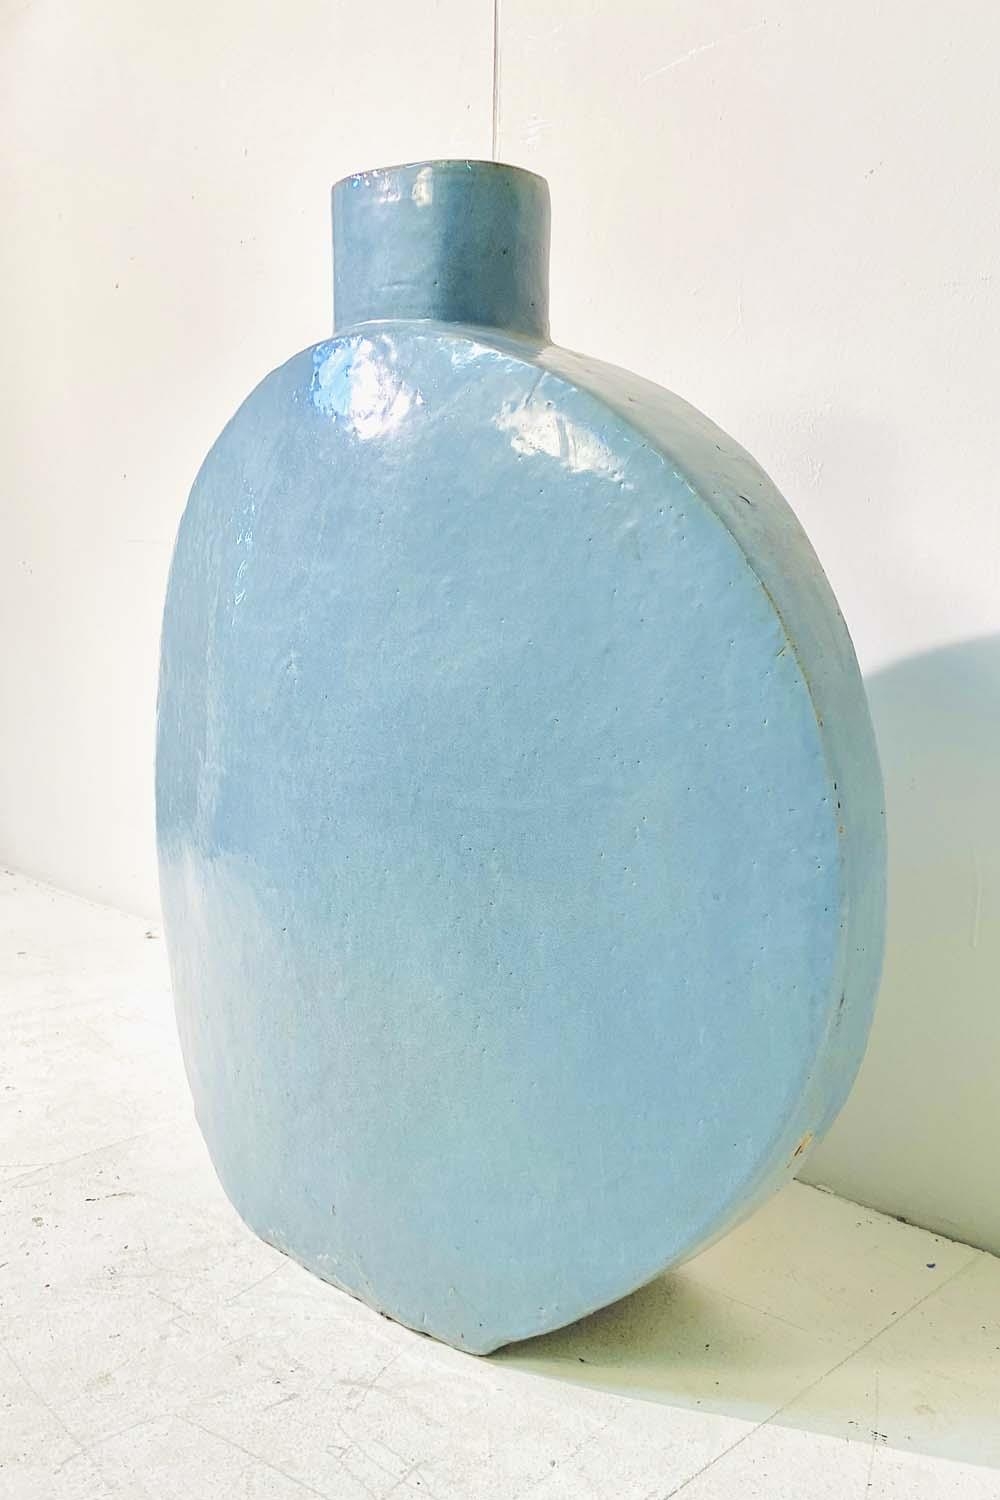 CHINESE STYLE MOON VASE, light blue glazed ceramic, 72cm H x 70cm W - Image 2 of 5